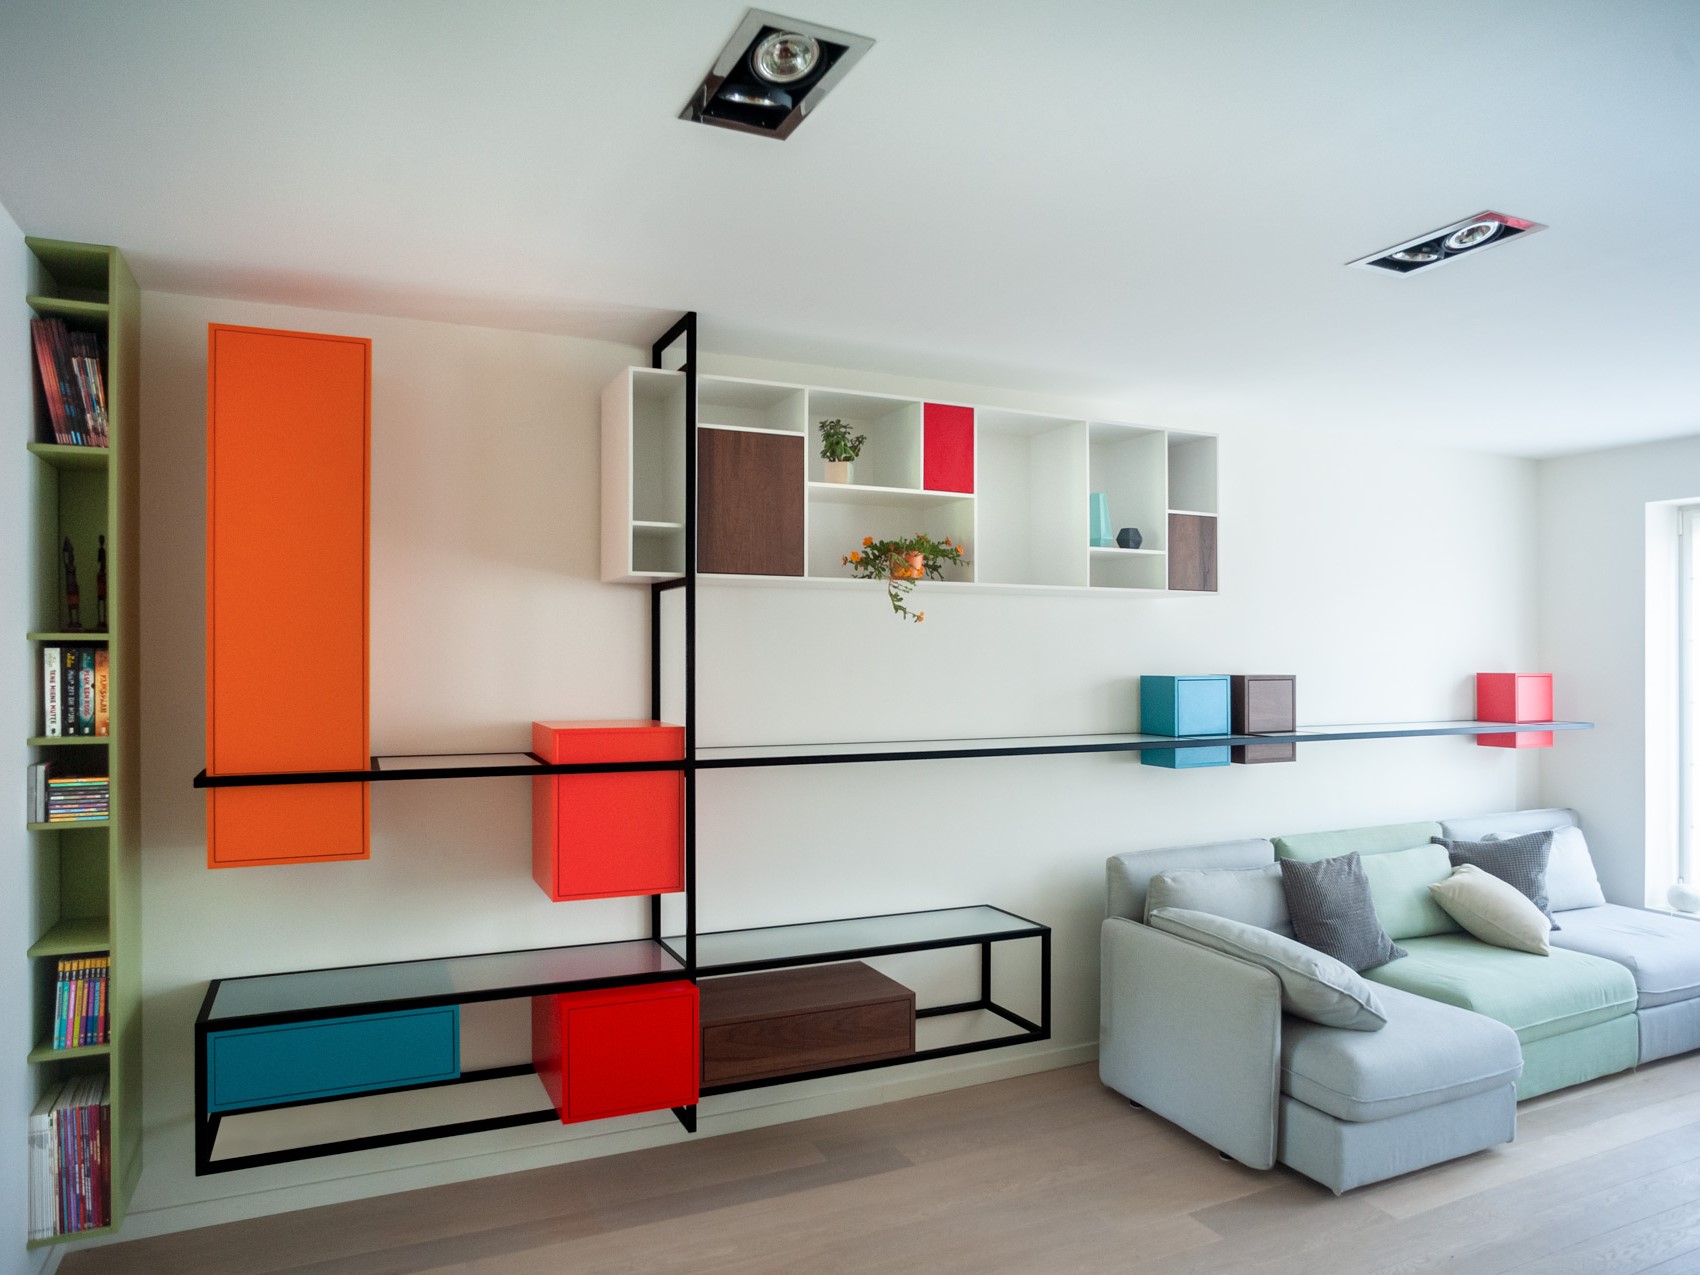 Uniek meubelstuk in woonkamer Borgerhout melange van kleuren en kubistisch indruk geven Mondriaan sfeer zwart metaalwerk met ingewoven glas